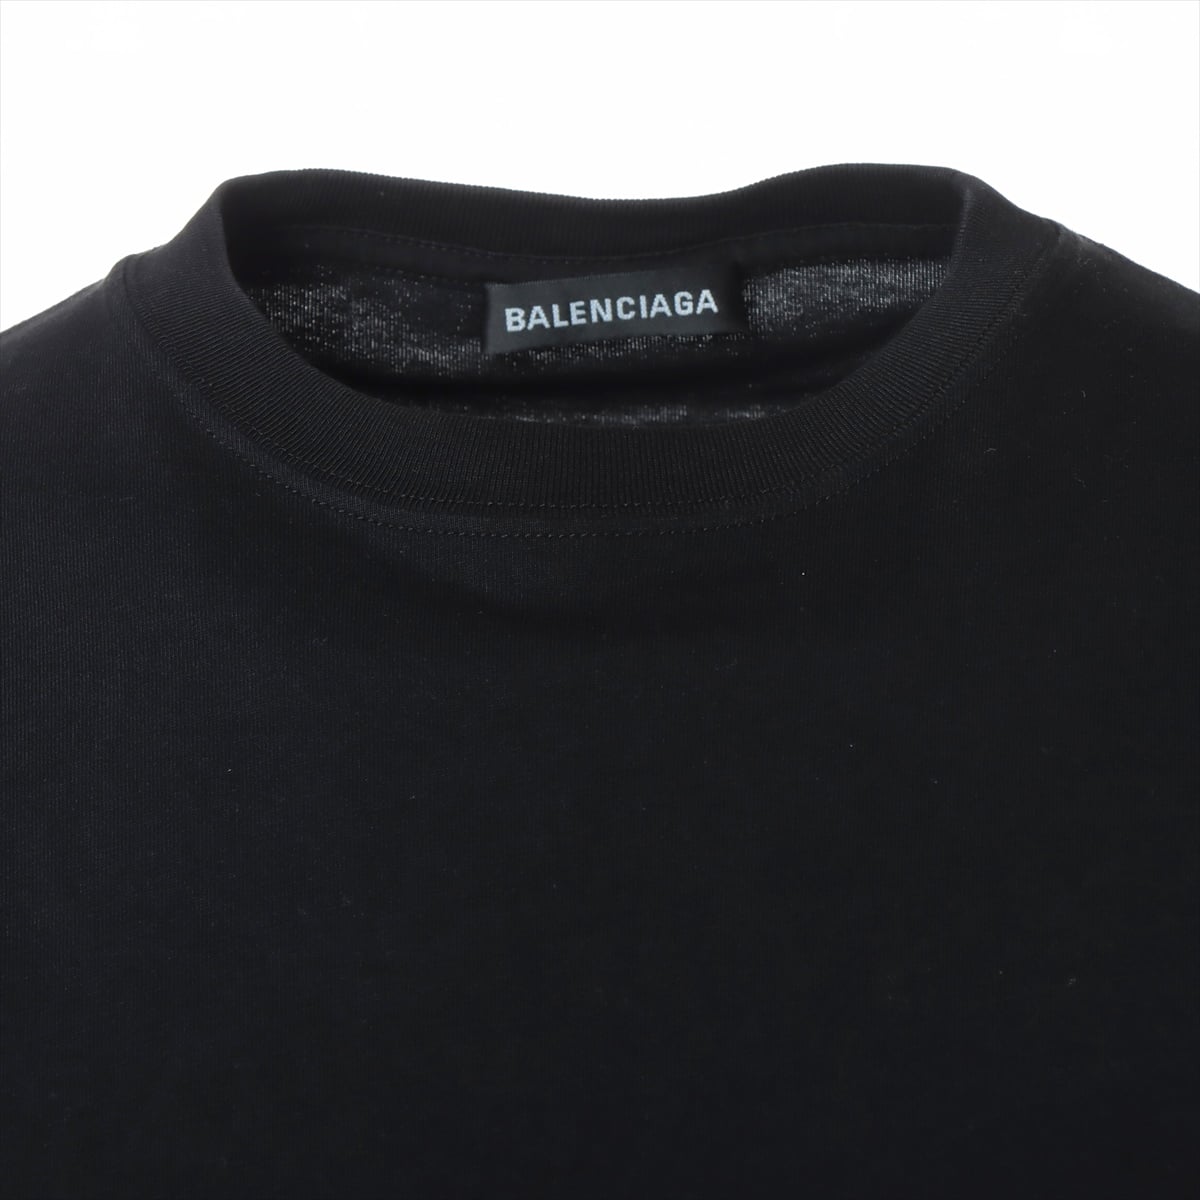 バレンシアガ 18年 コットン Tシャツ XS メンズ ブラック 556150